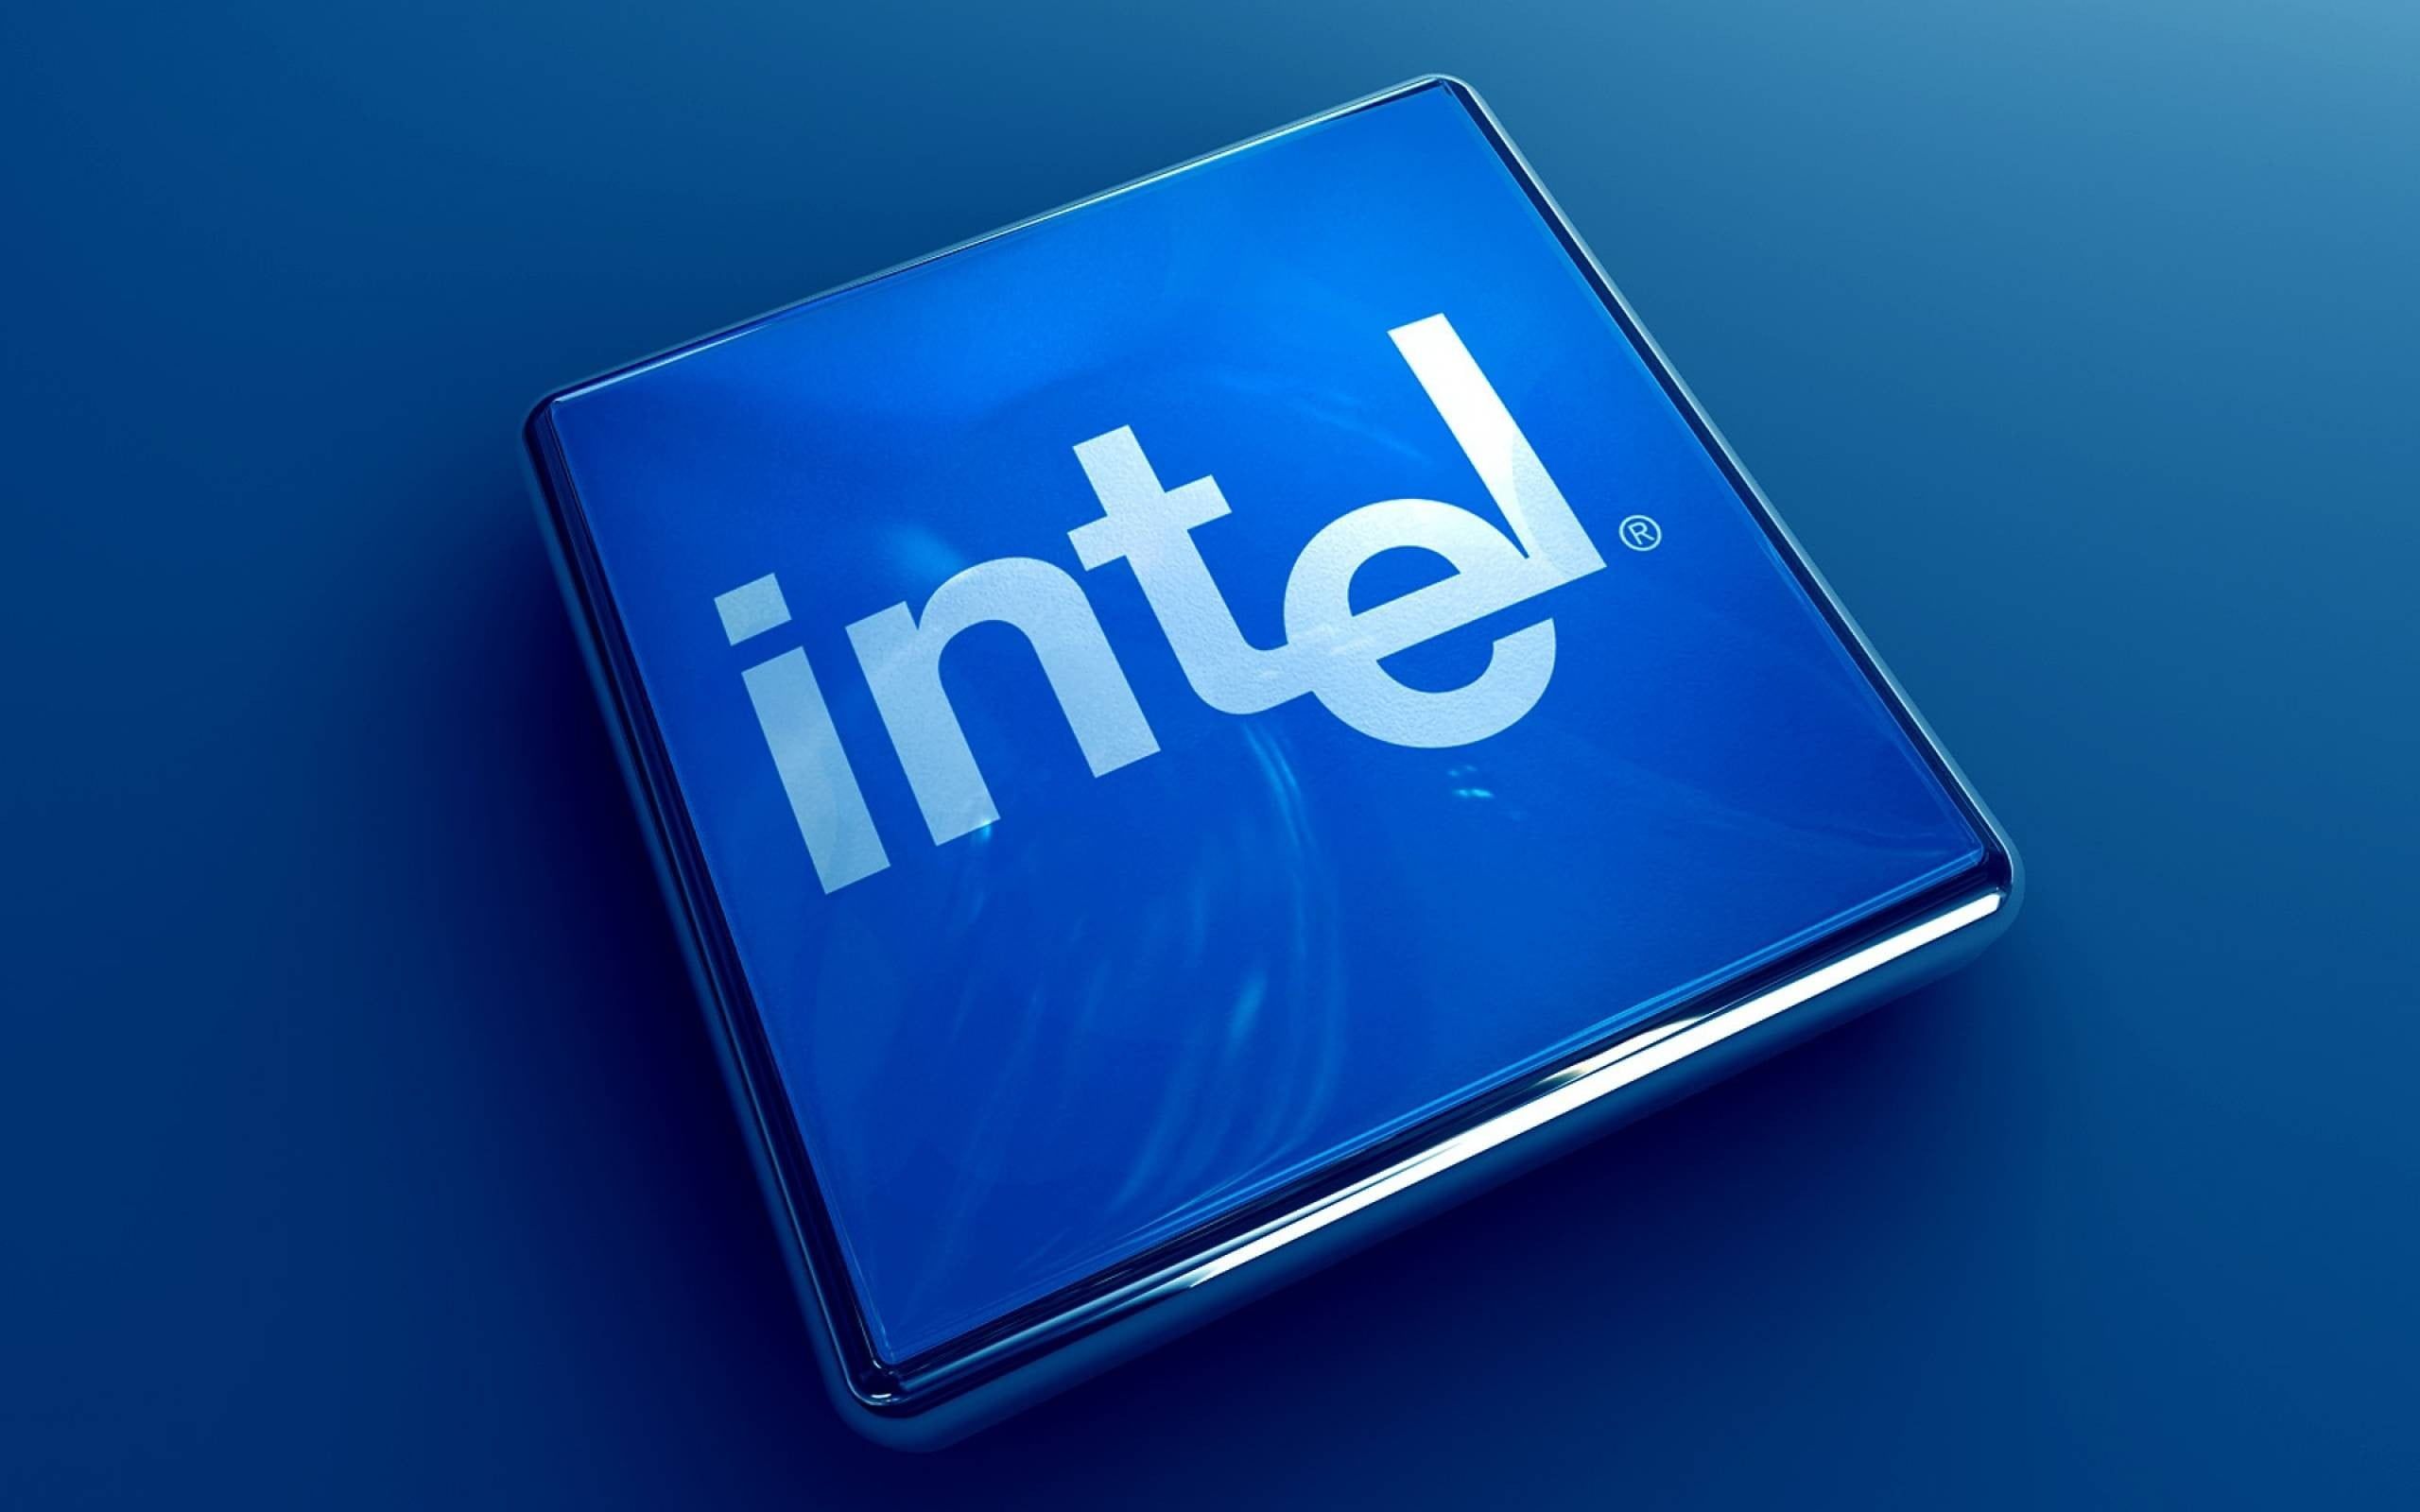 Intel Wallpapers 4k Hd Intel Backgrounds On Wallpaperbat